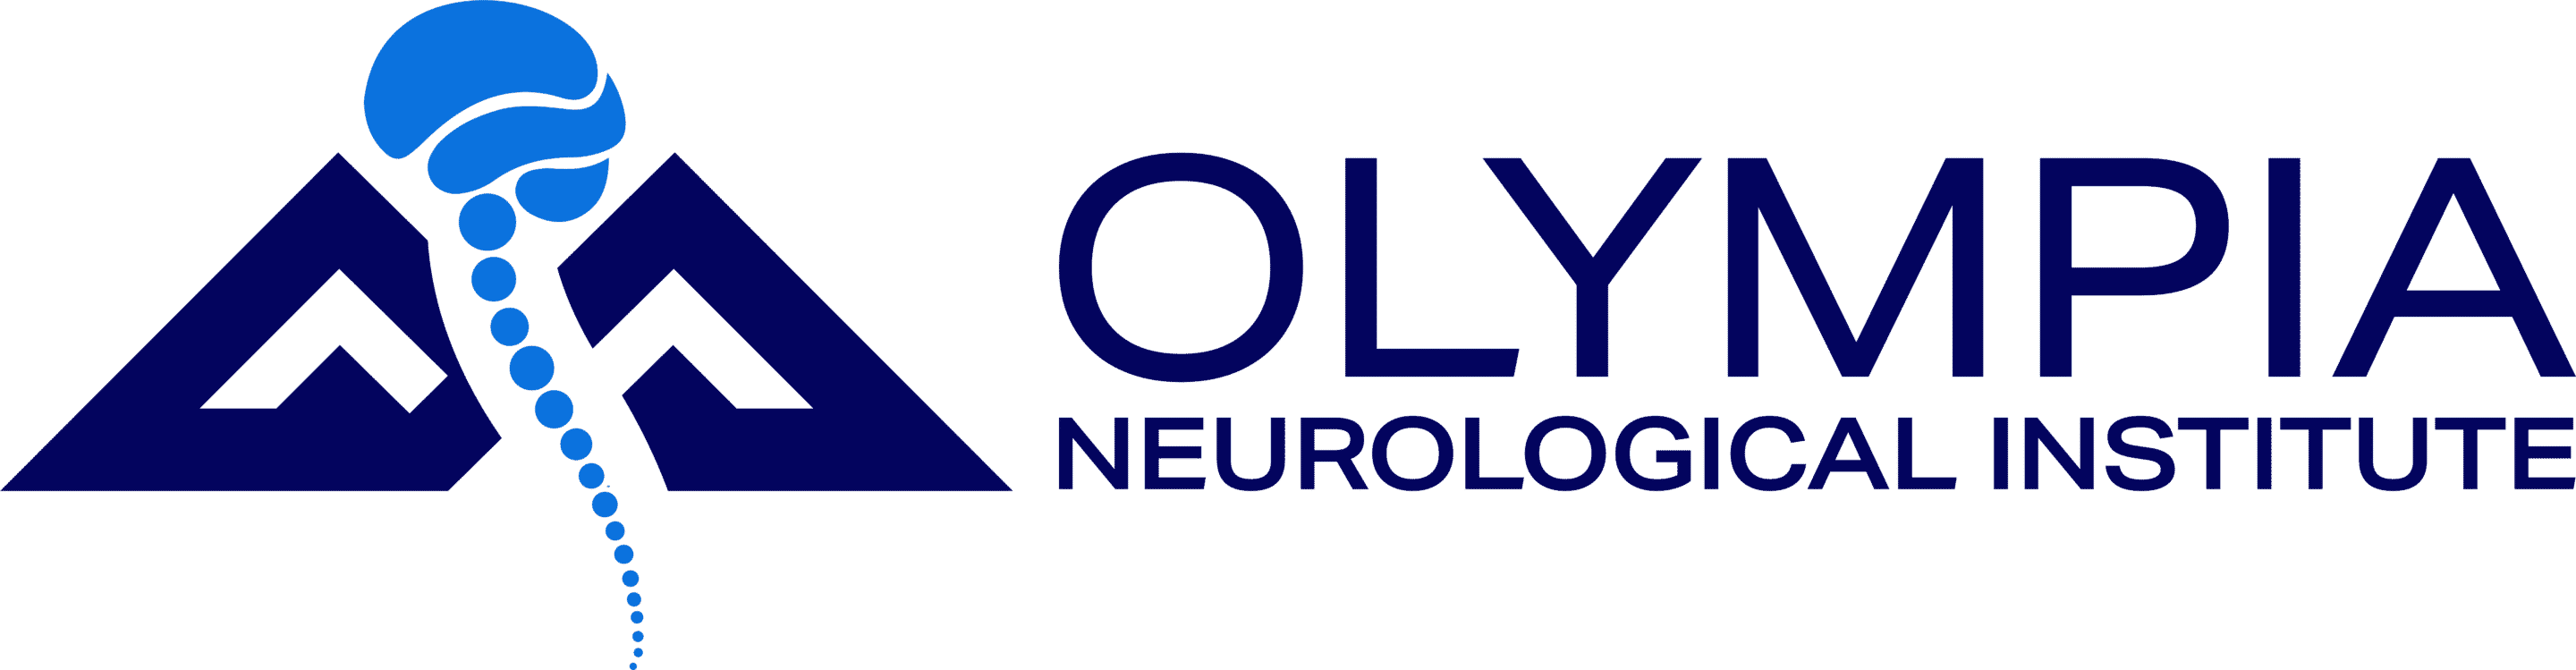 Olympia Neurological Institute